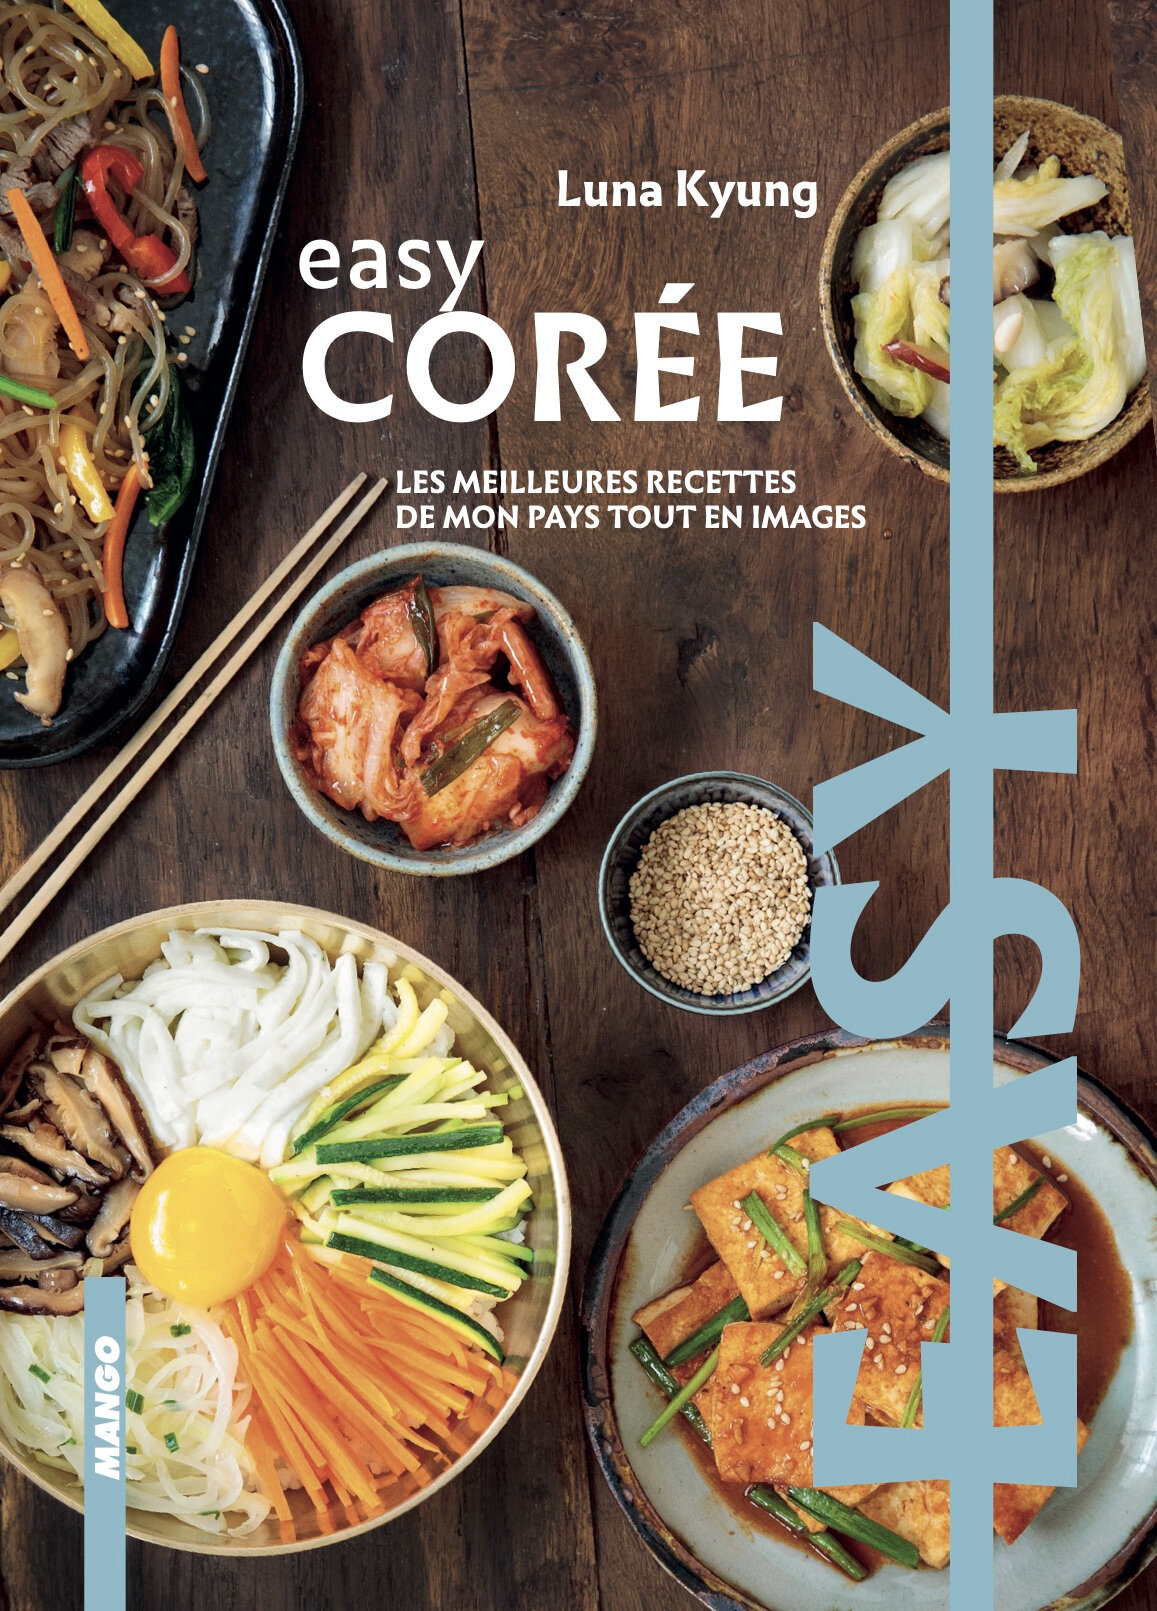 Easy Corée : Sortie de mon livre de cuisine coréenne - La Table